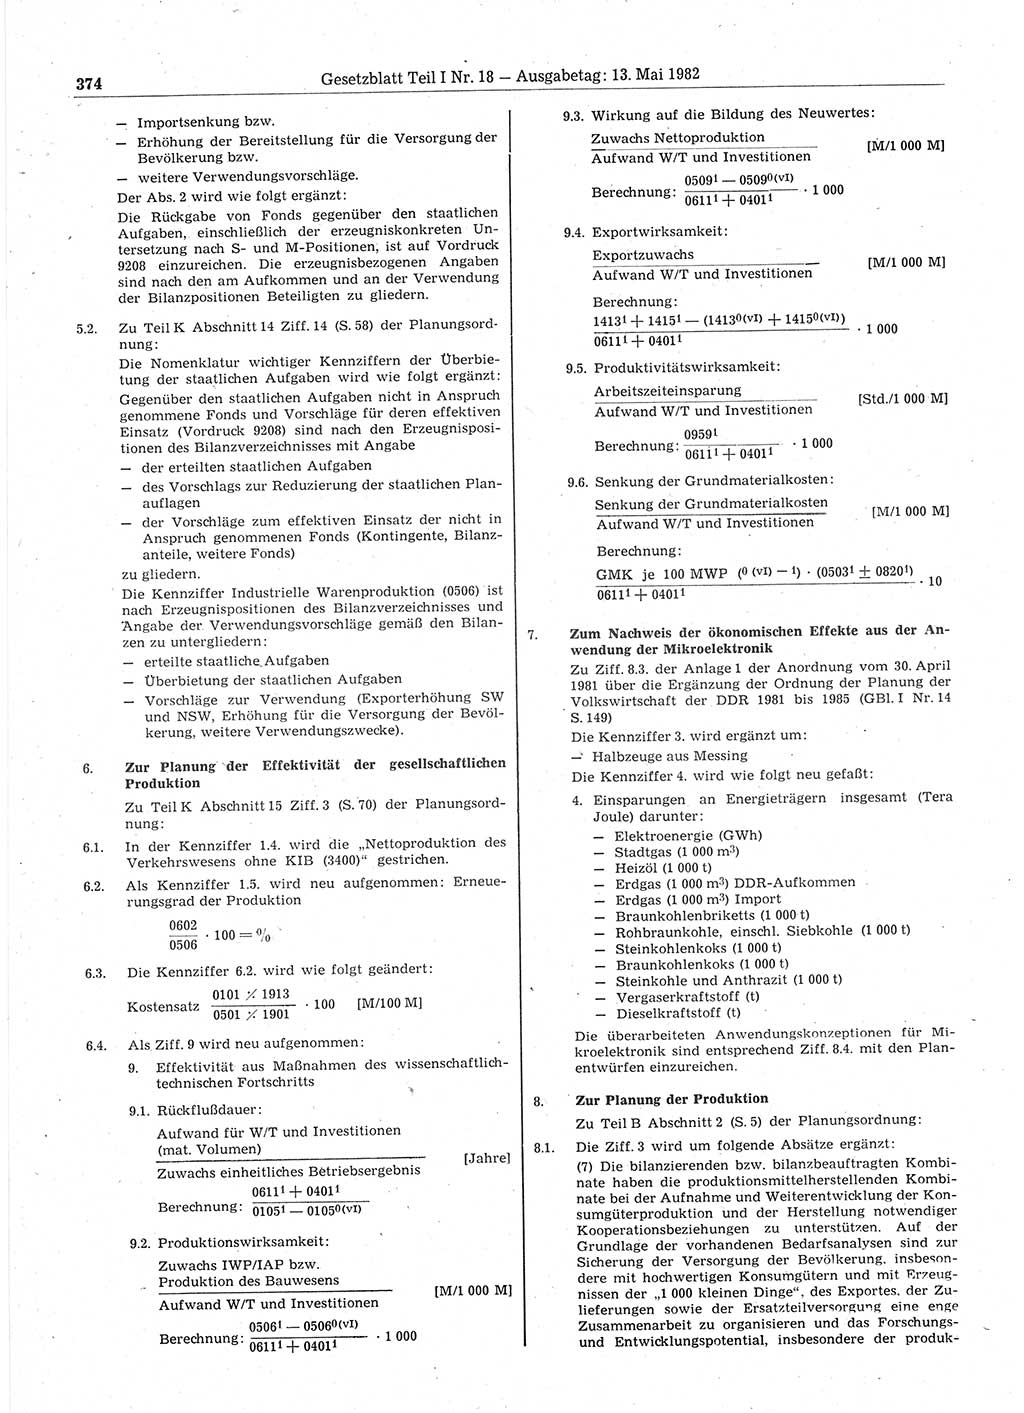 Gesetzblatt (GBl.) der Deutschen Demokratischen Republik (DDR) Teil Ⅰ 1982, Seite 374 (GBl. DDR Ⅰ 1982, S. 374)